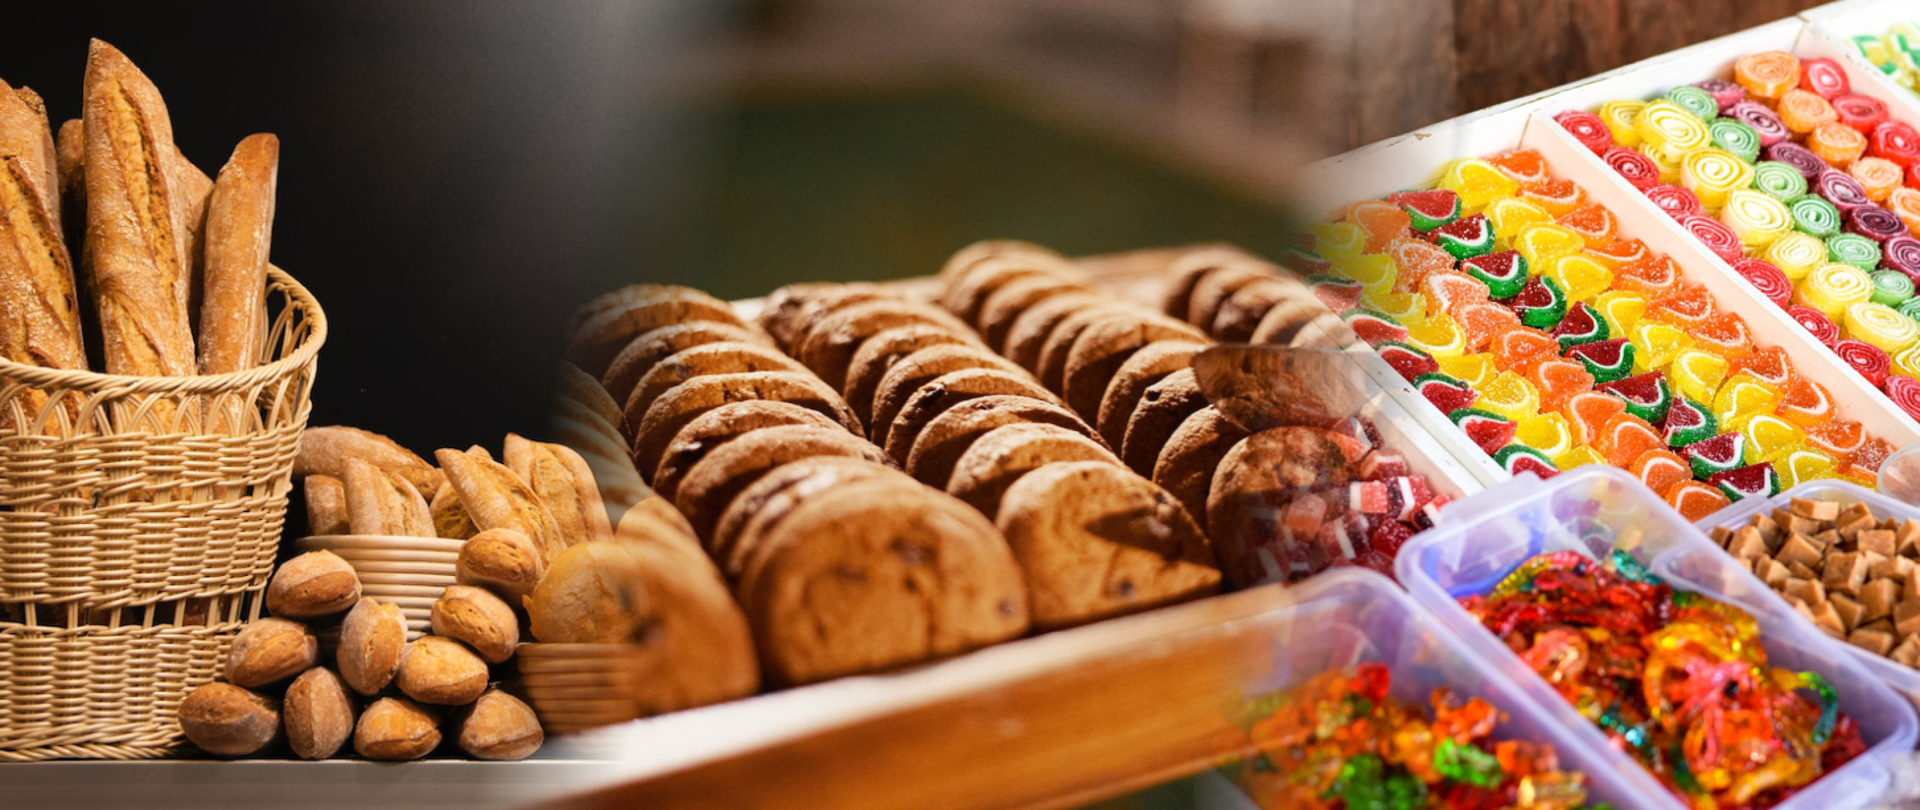 Fotografia od lewej: pieczywo – bagietki w koszu wiklinowym oraz inne rodzaje pieczywa w dwóch mniejszych koszykach, ciastka na wagę ułożone na ekspozycji sklepowej, różne rodzaje cukierków na wagę na ekspozycji sklepowej.